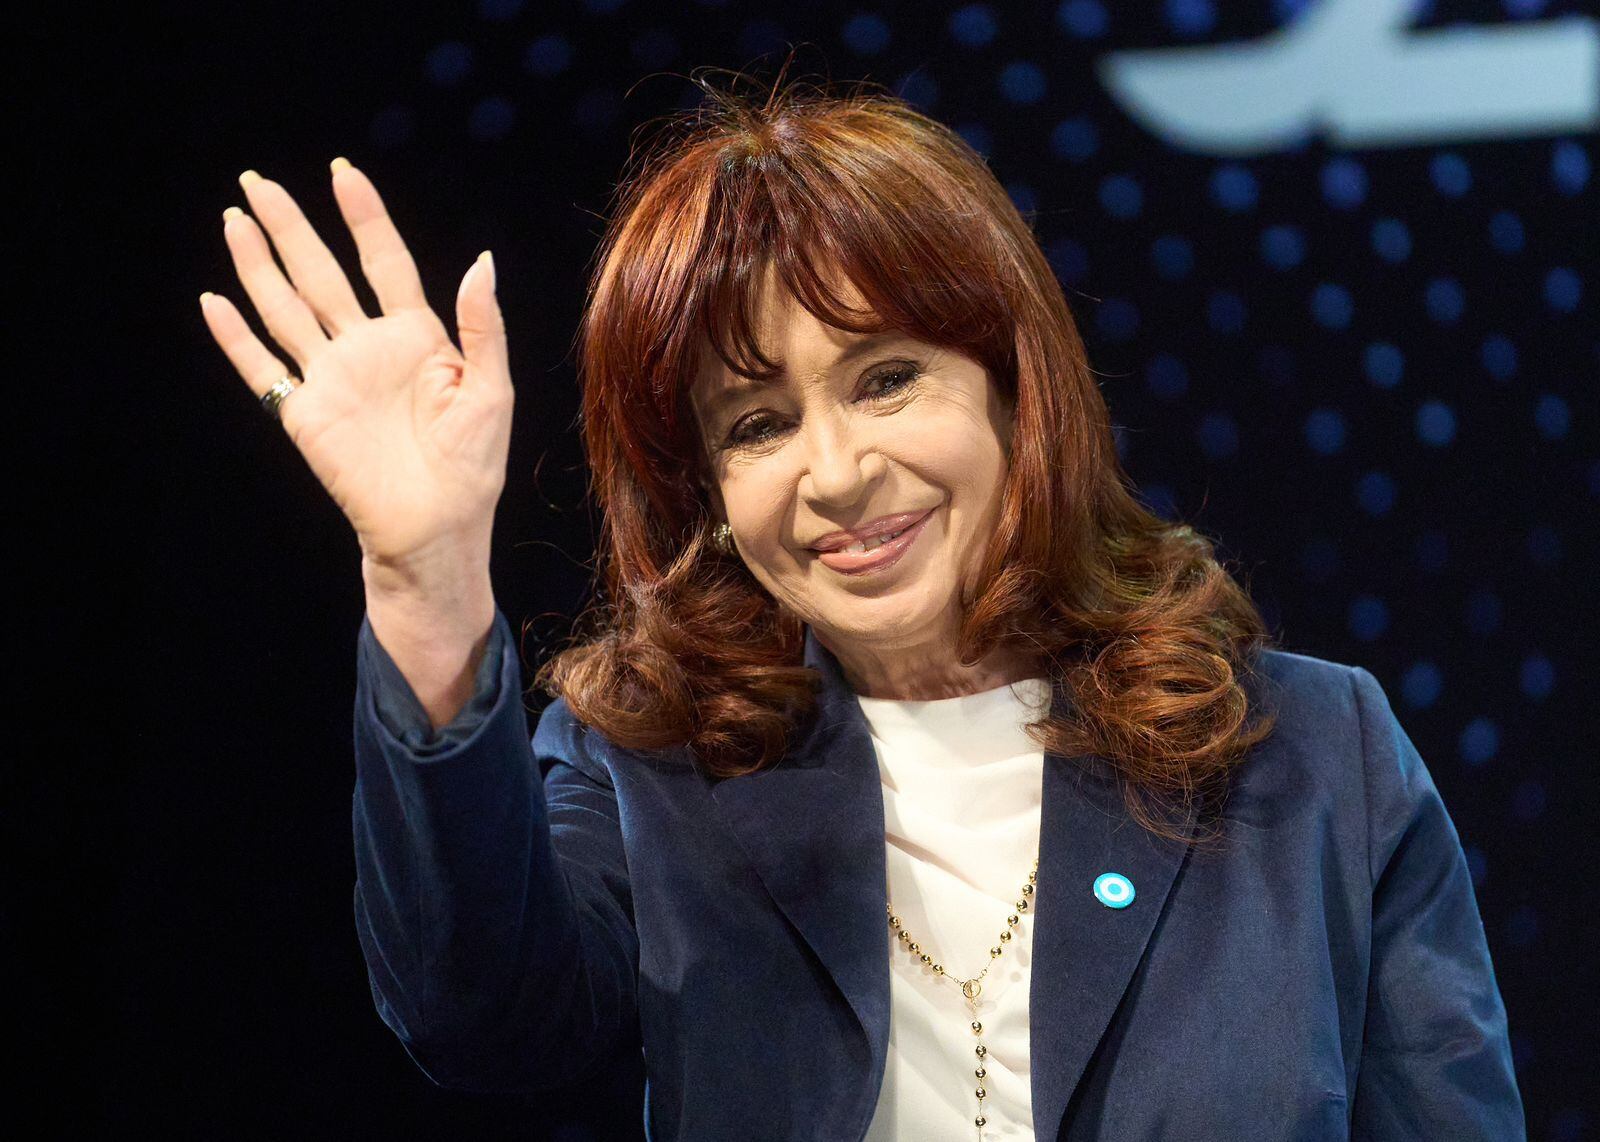 Cristina Kirchner da una charla sobre “castas, herencias, derrumbes y futuro” a un mes de las elecciones